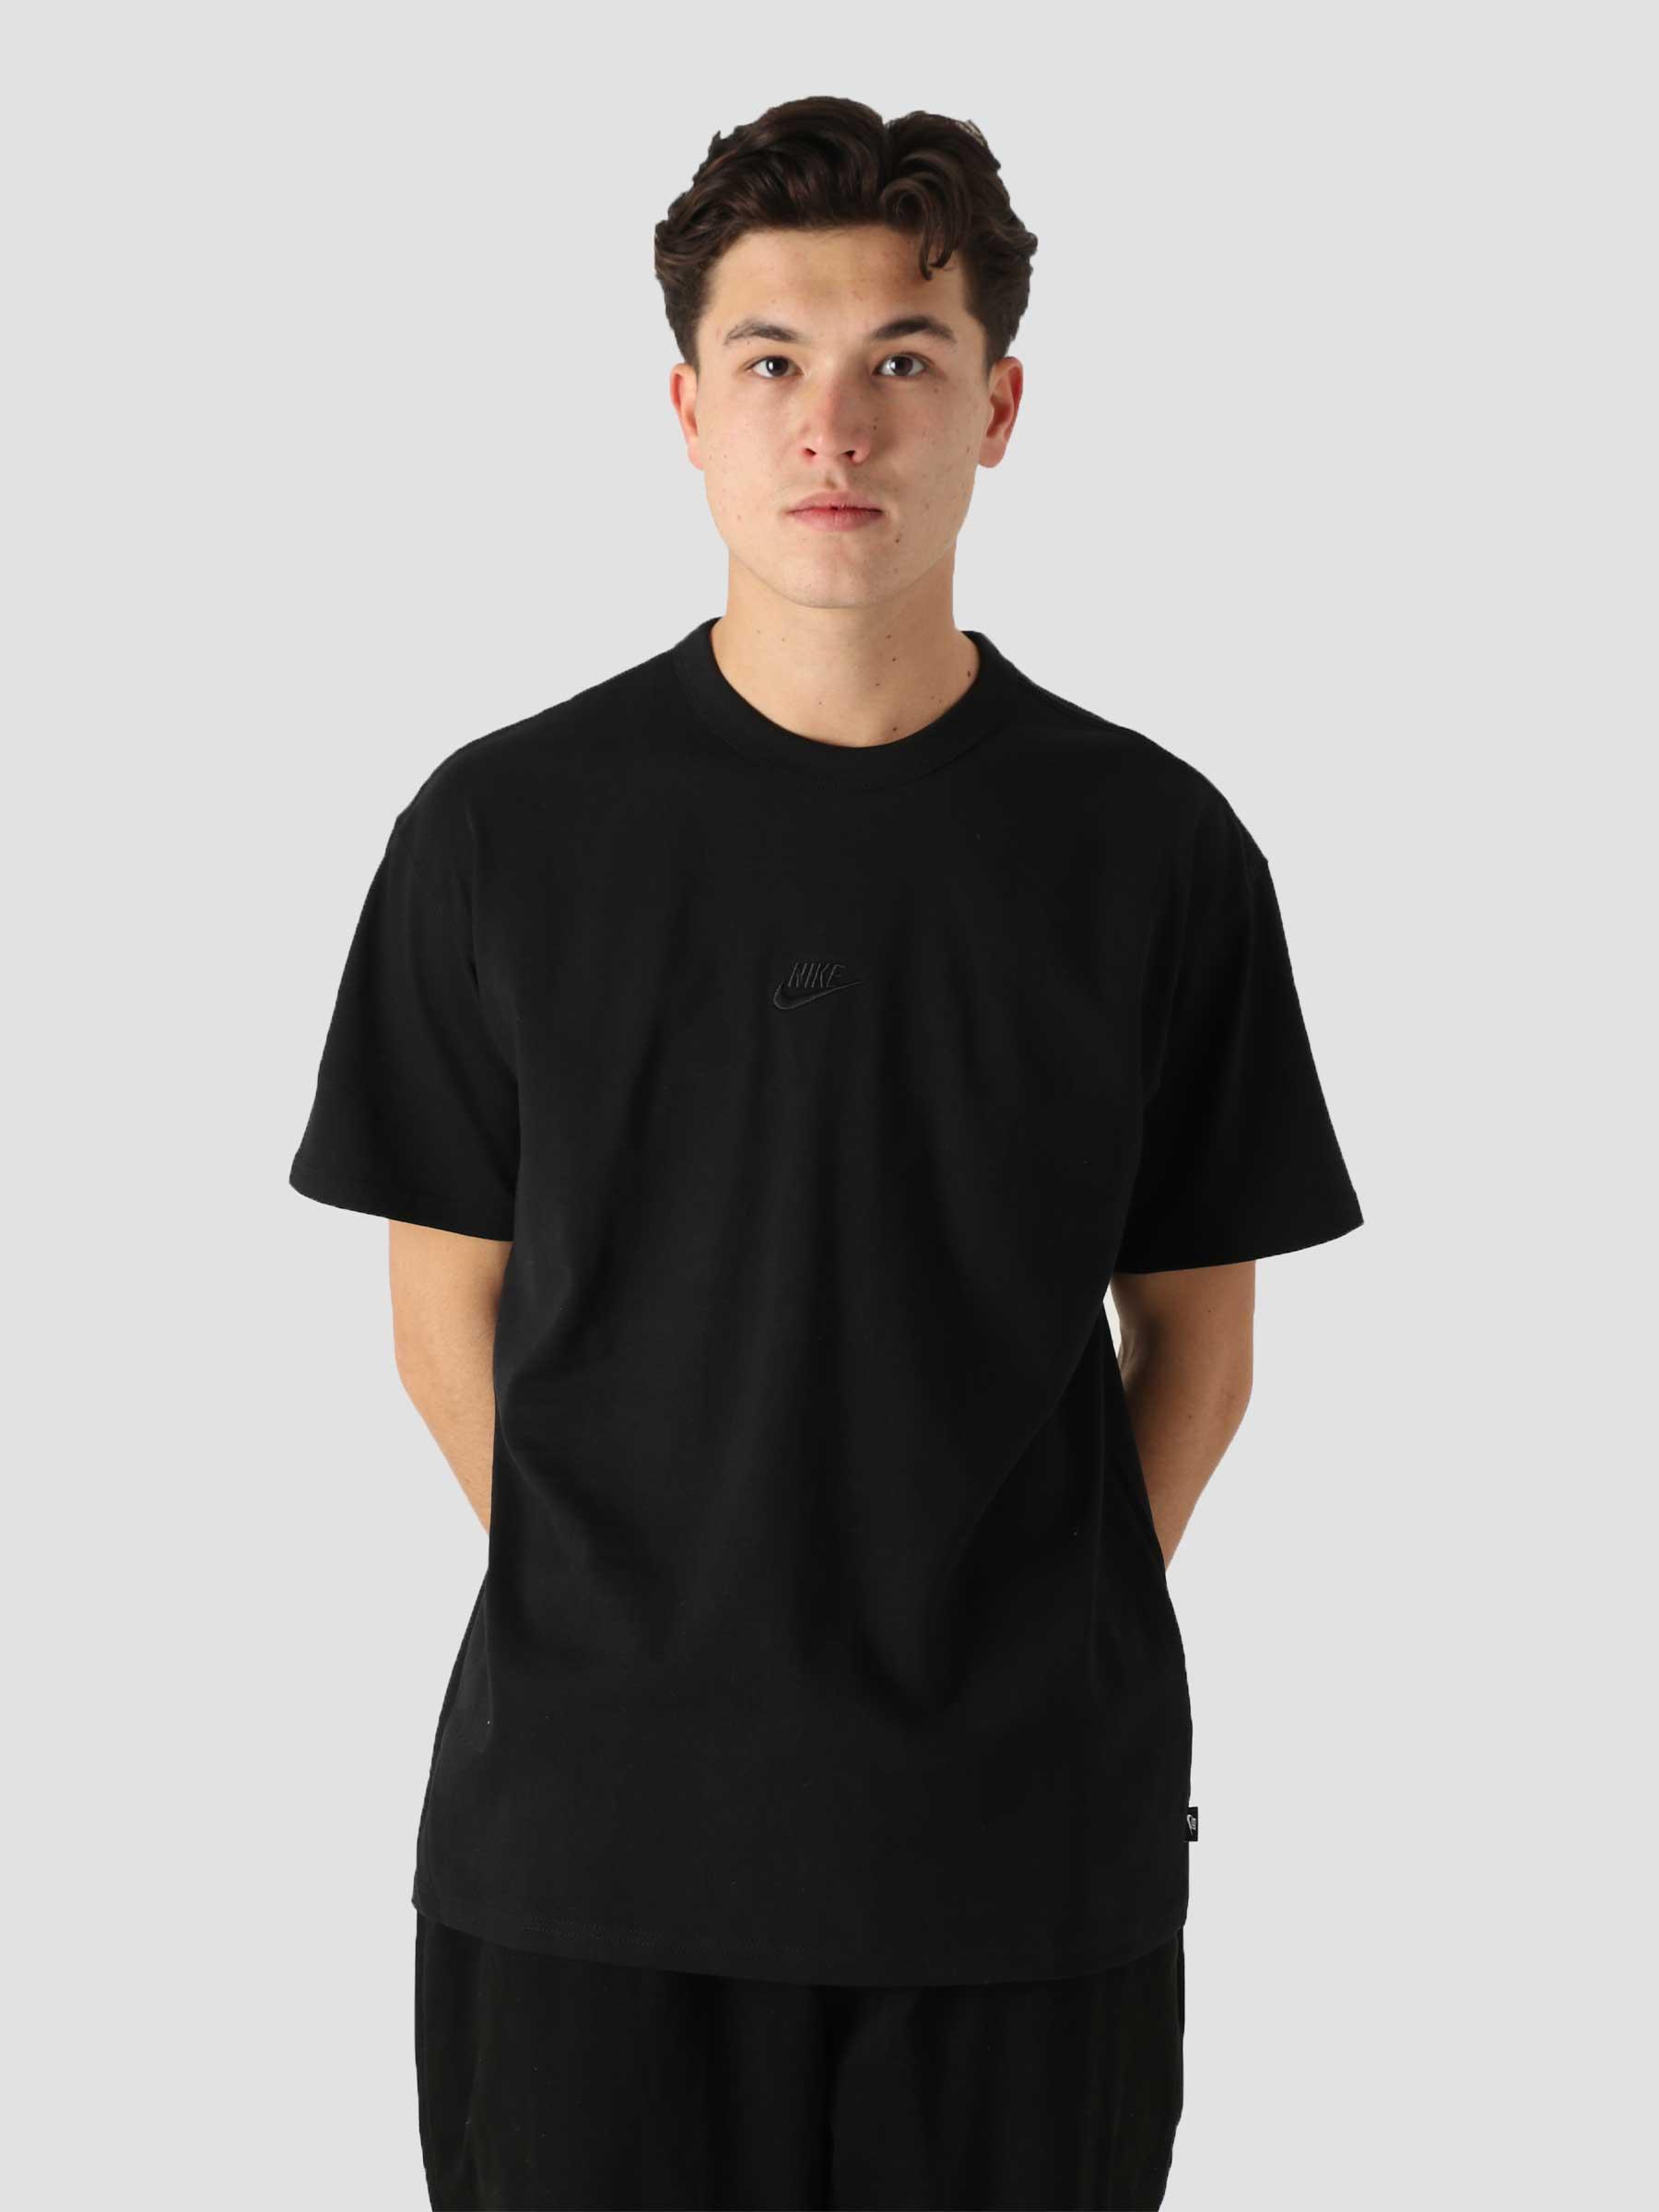 NSW T-Shirt Premium Essential Black Black DB3193-010